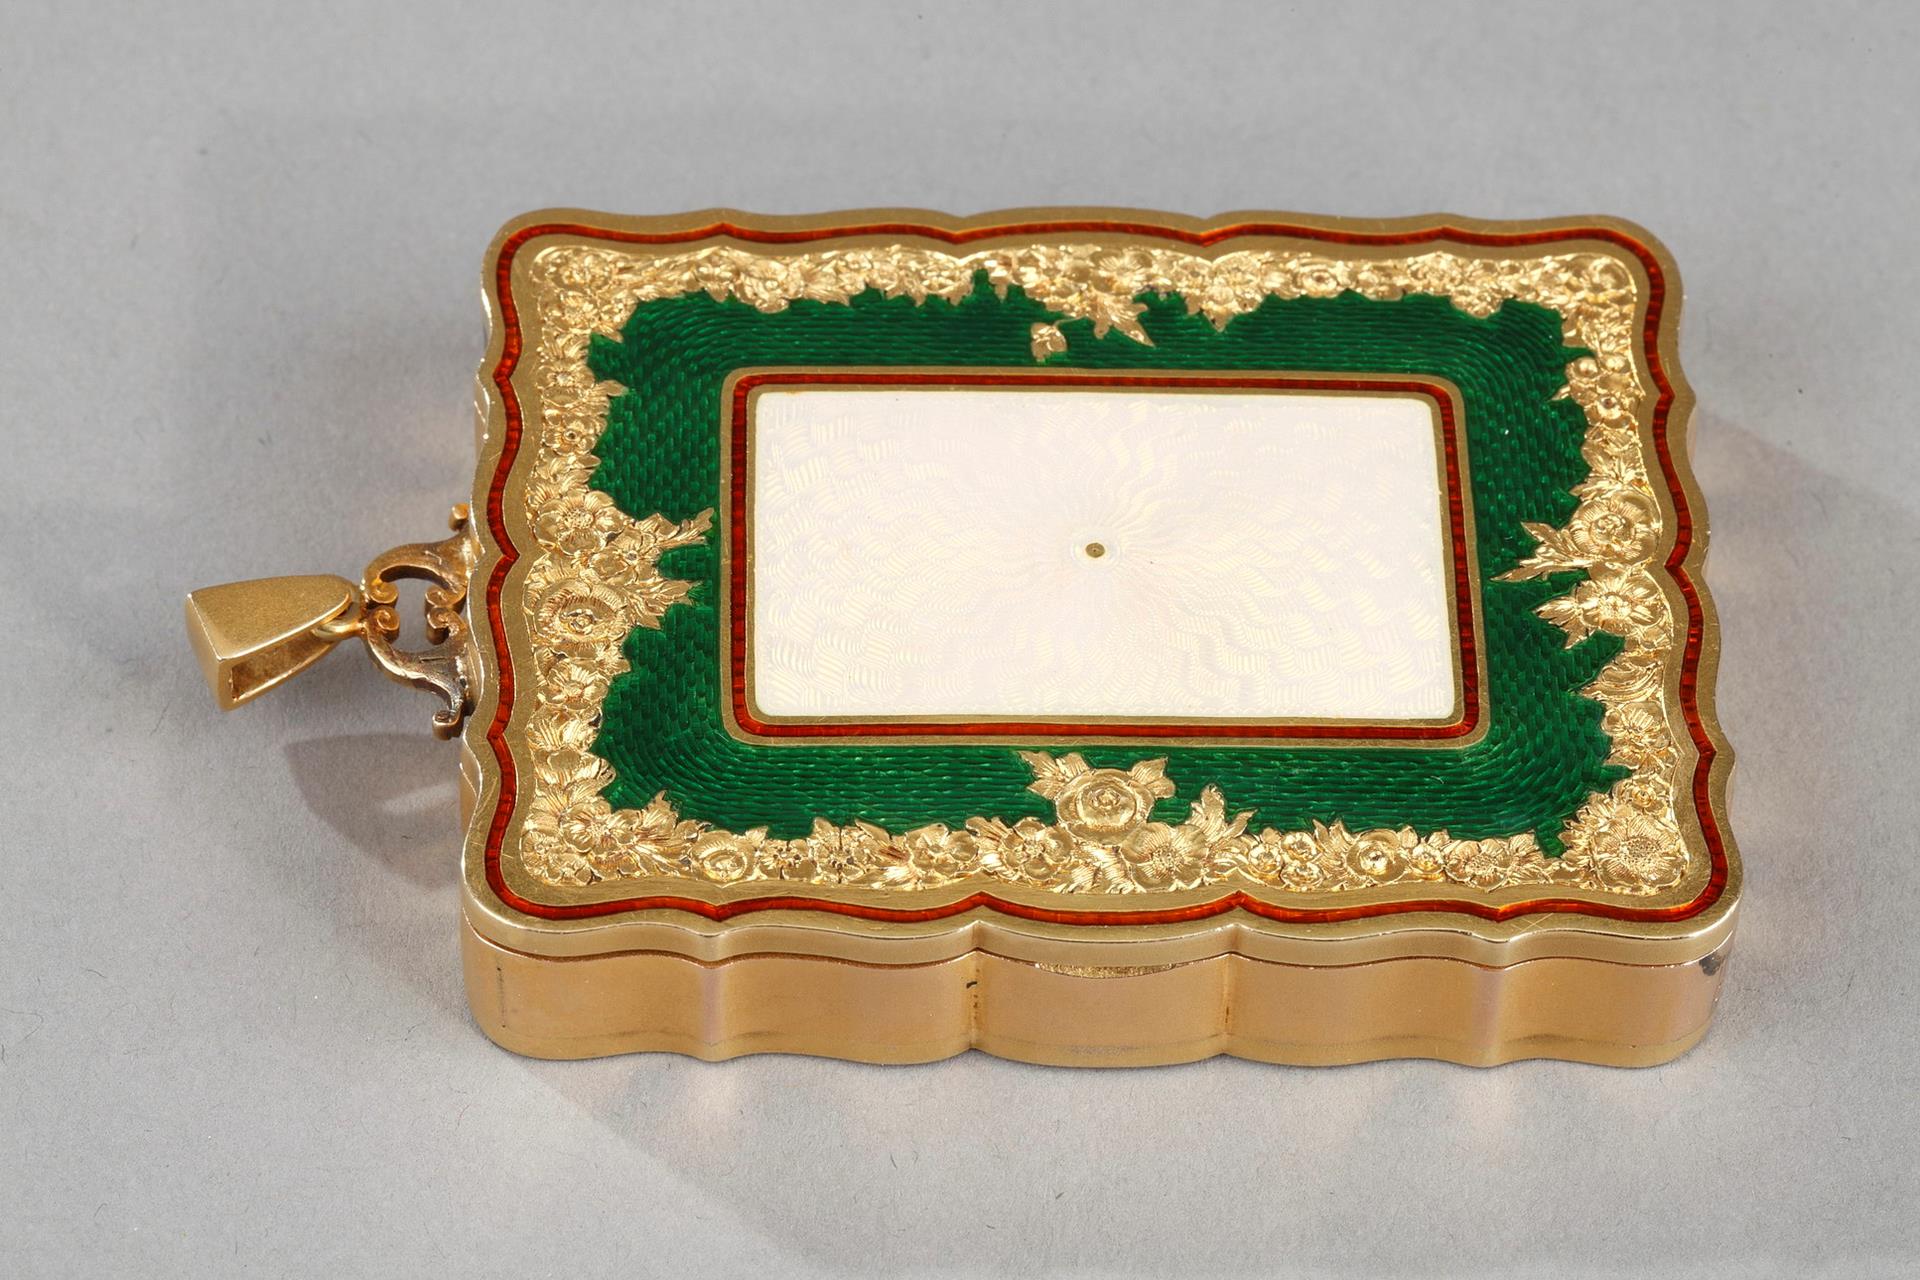 case, enamel, green, carnet de bal, XXth century